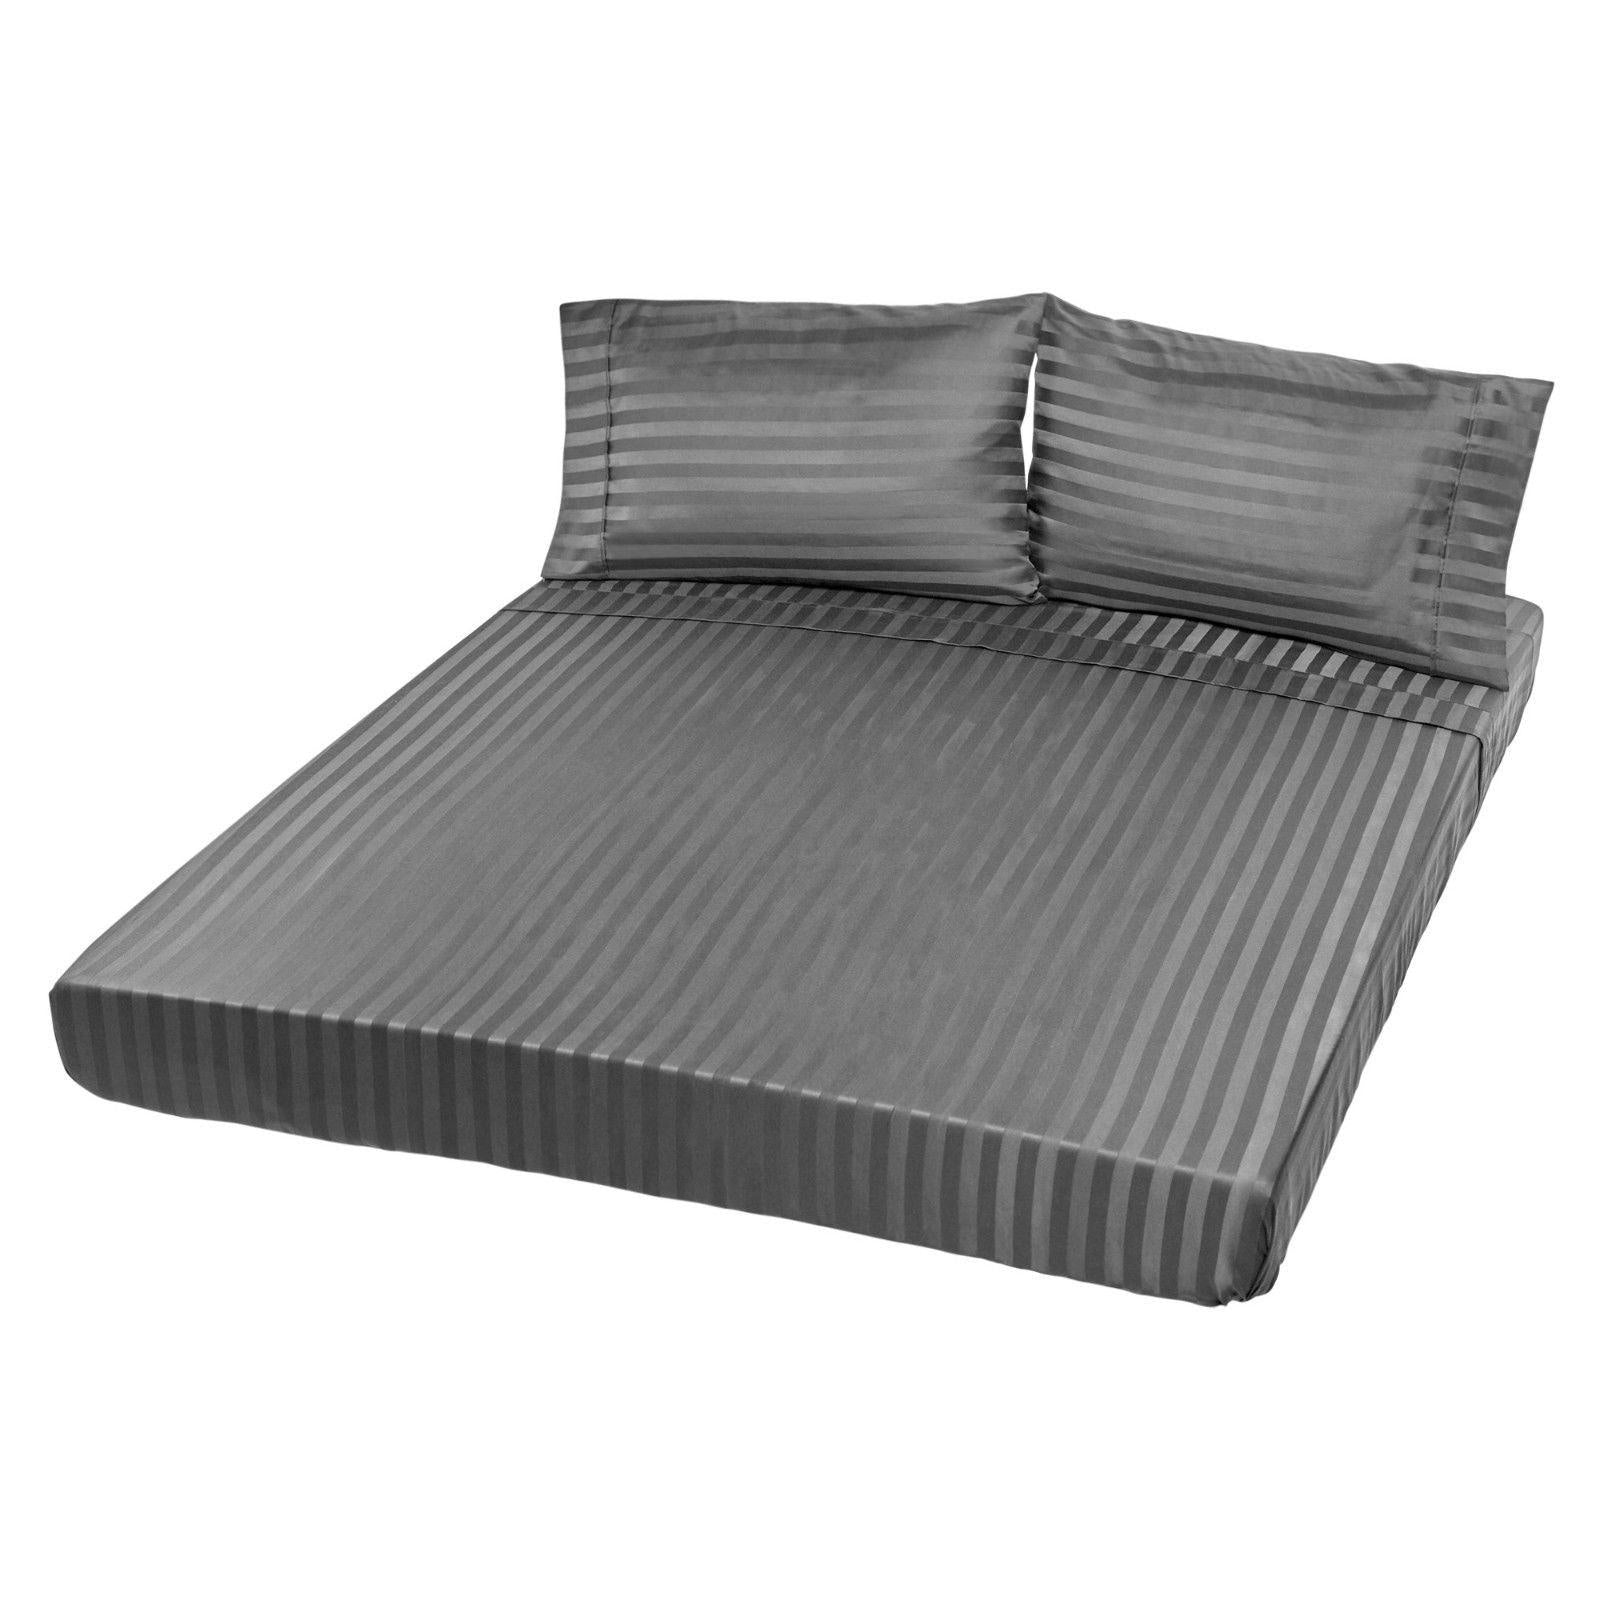 Royal Comfort 1200TC Sheet Set Damask Cotton Blend Ultra Soft Sateen Bedding Charcoal Grey Queen Deals499